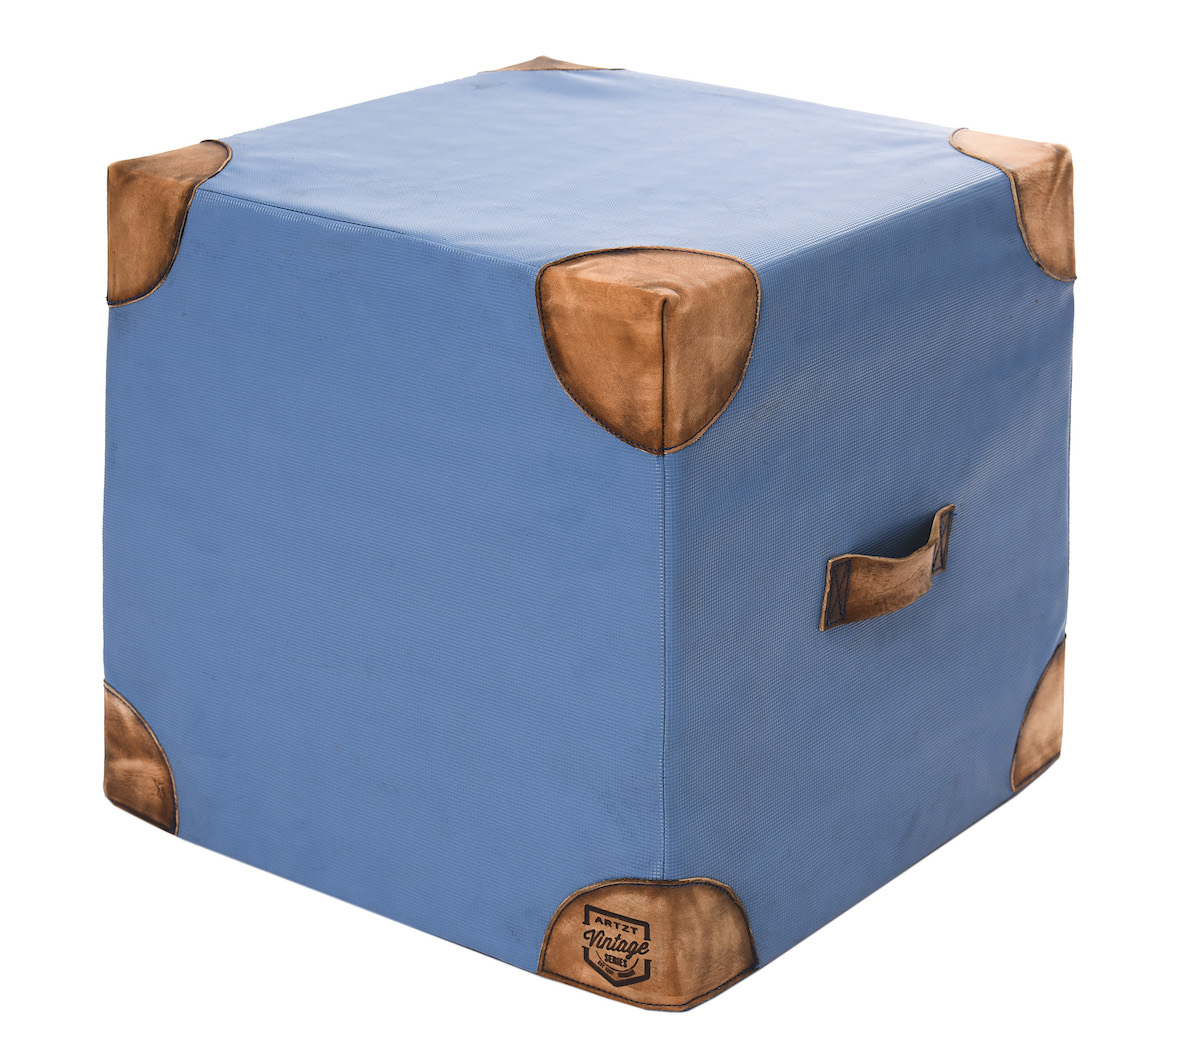 Cube Trainingskissen - Wie damals!